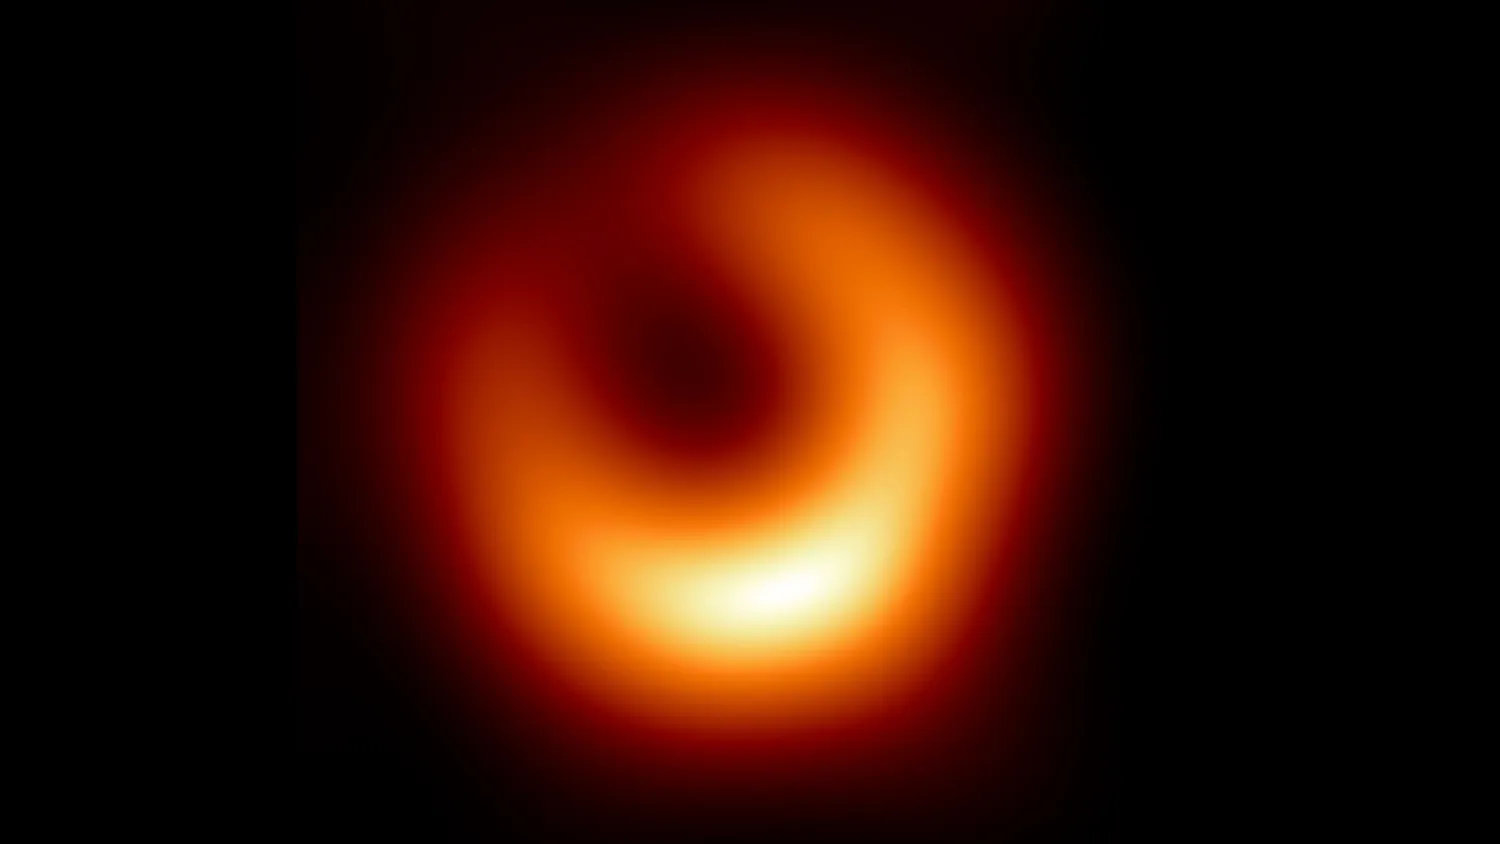 Mehr über den Artikel erfahren 2. Bild des 1. jemals abgebildeten Schwarzen Lochs bestätigt Einsteins Allgemeine Relativitätstheorie (Foto)